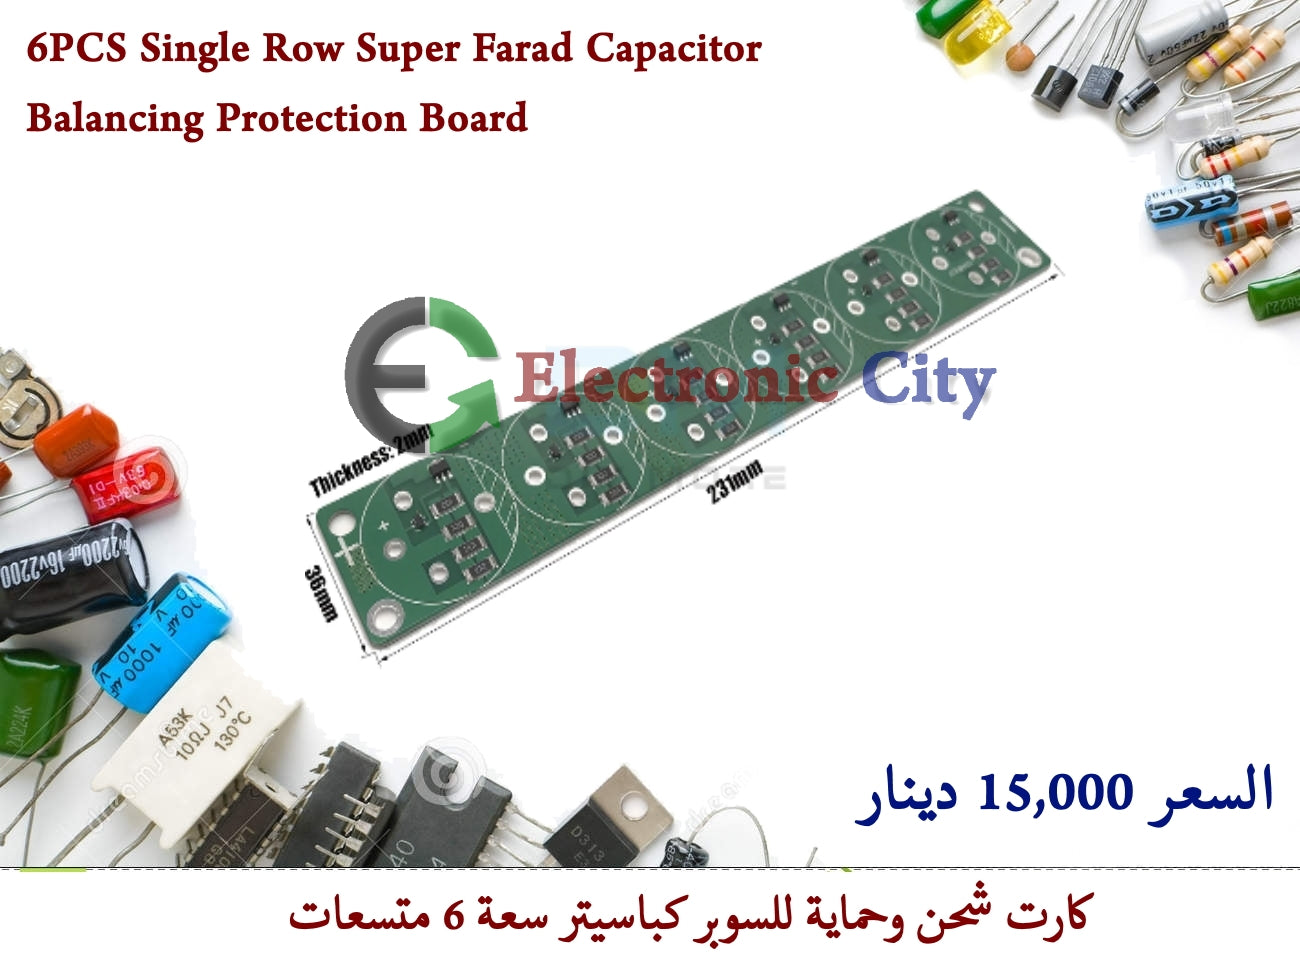 6PCS Single Row Super Farad Capacitor Balancing Protection Board